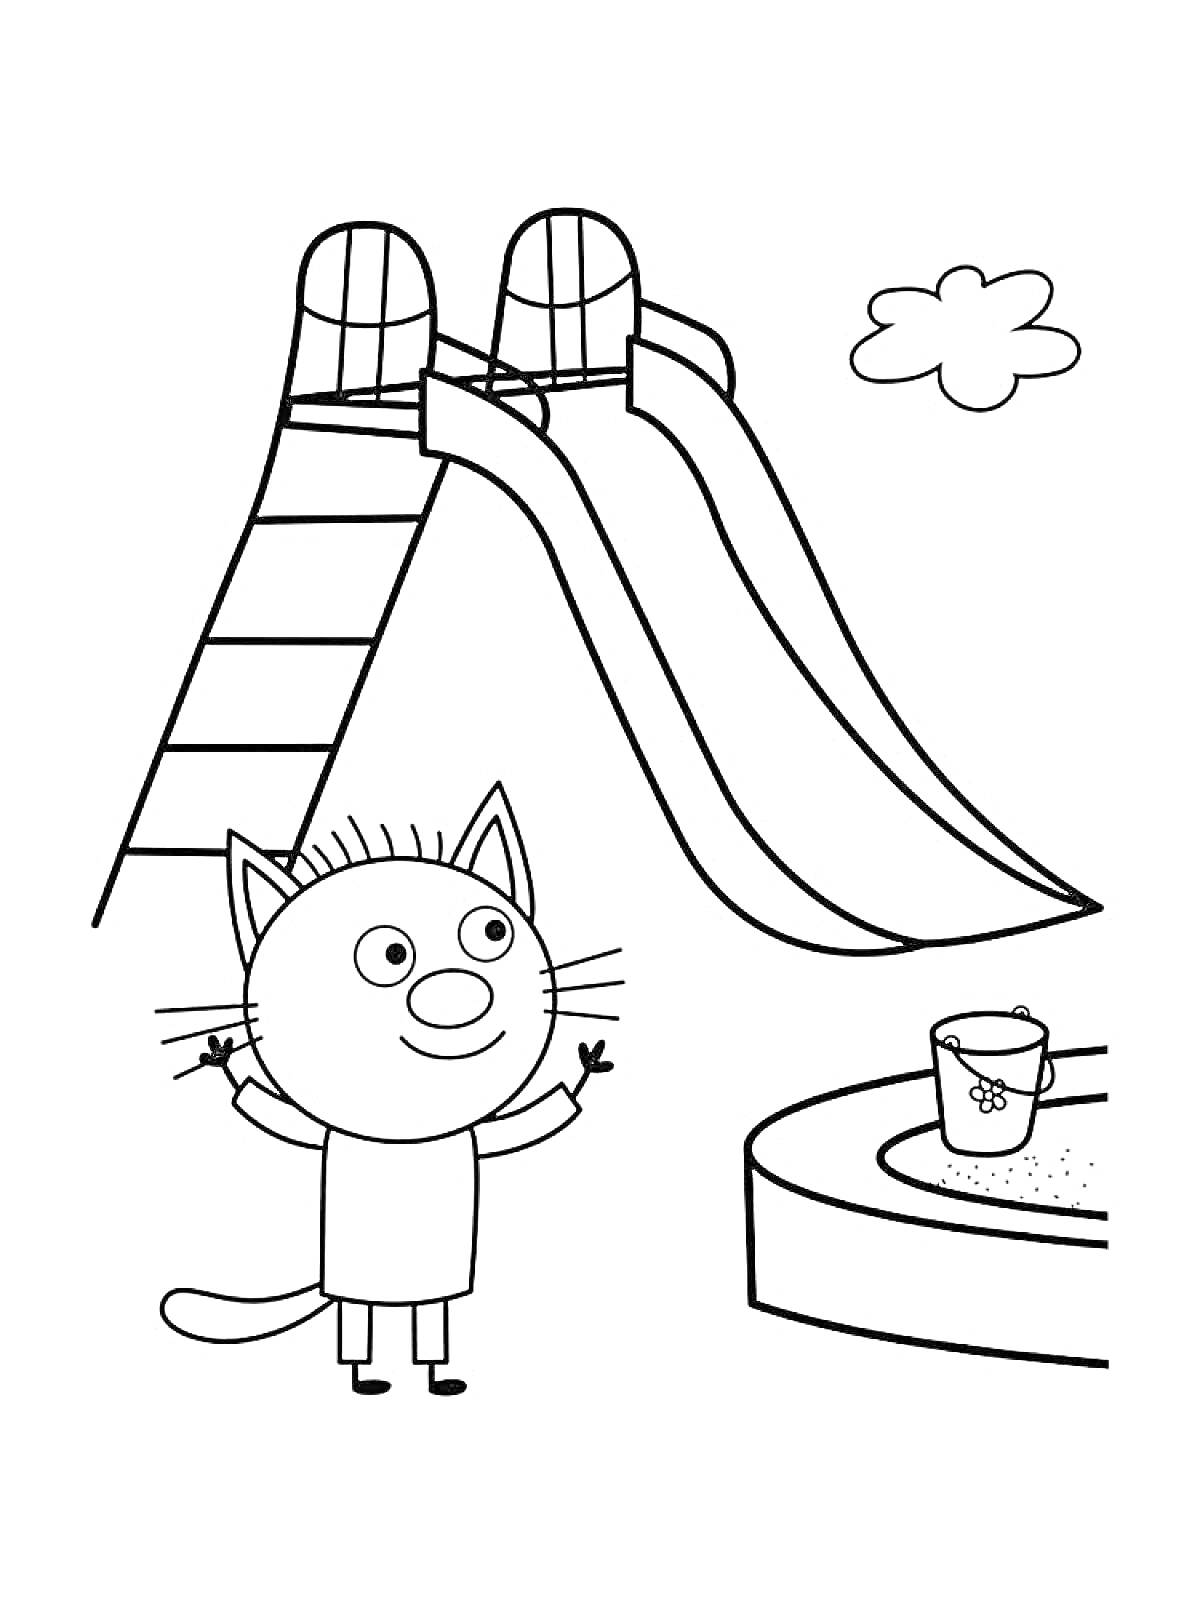 Раскраска Котёнок у двойной горки на детской площадке, рядом с ведёрком и песочницей, над ведёрком облачко